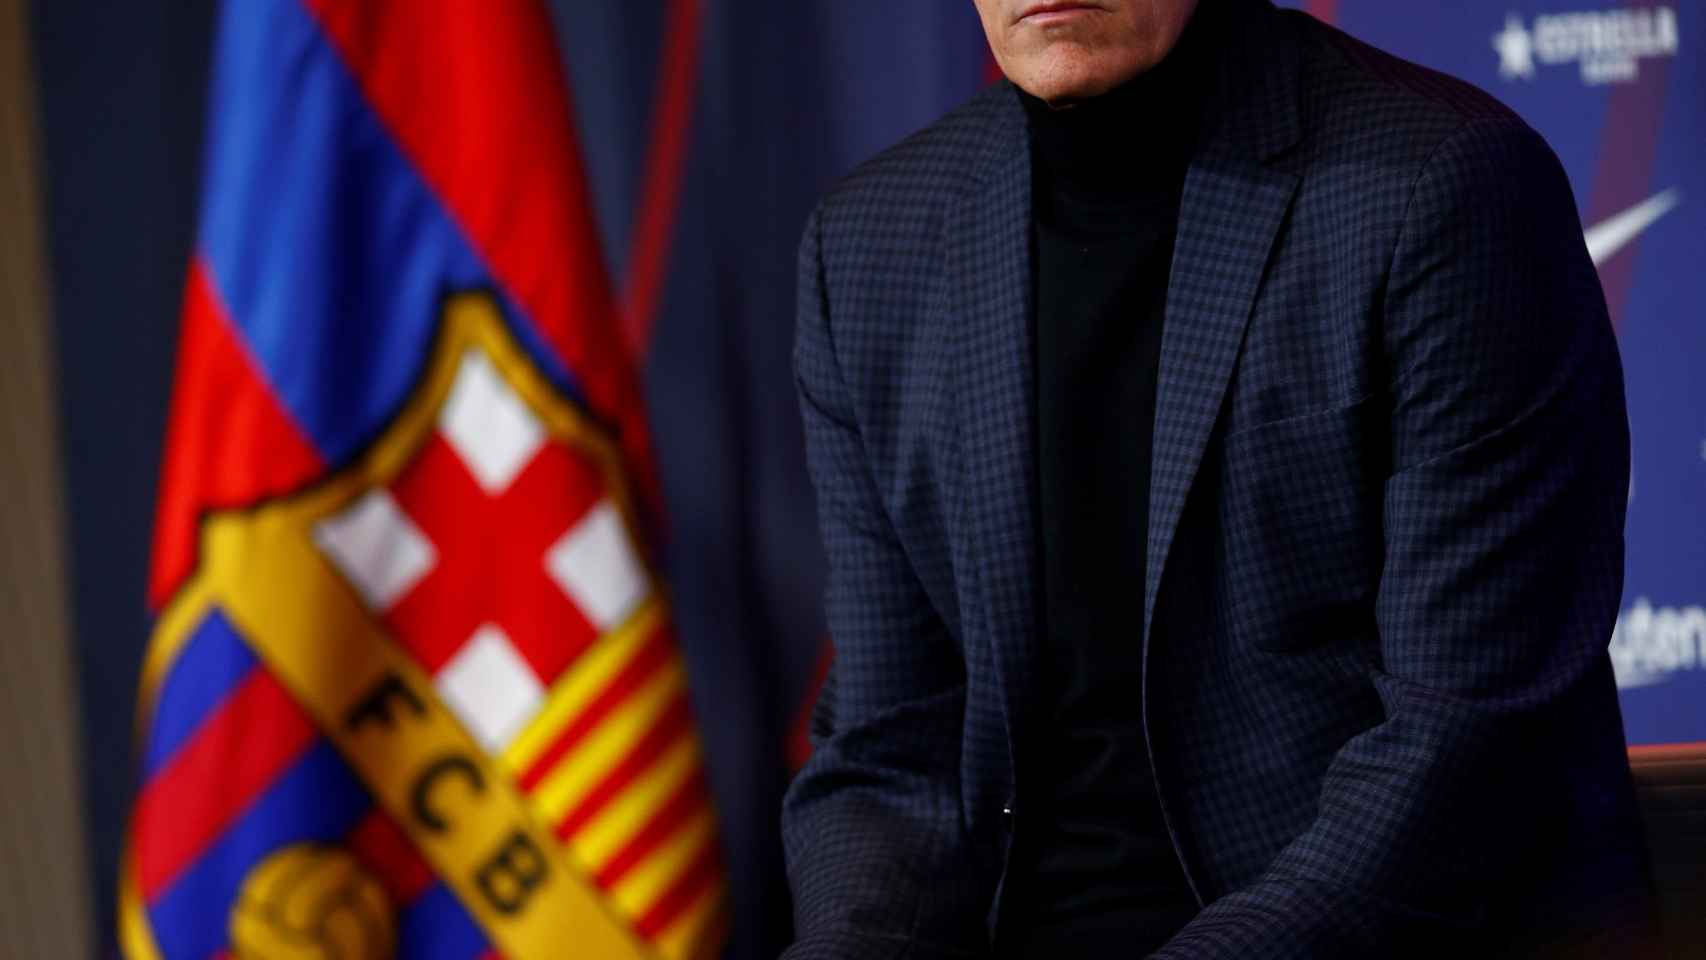 Quique Setién, presentado como nuevo técnico del FC Barcelona